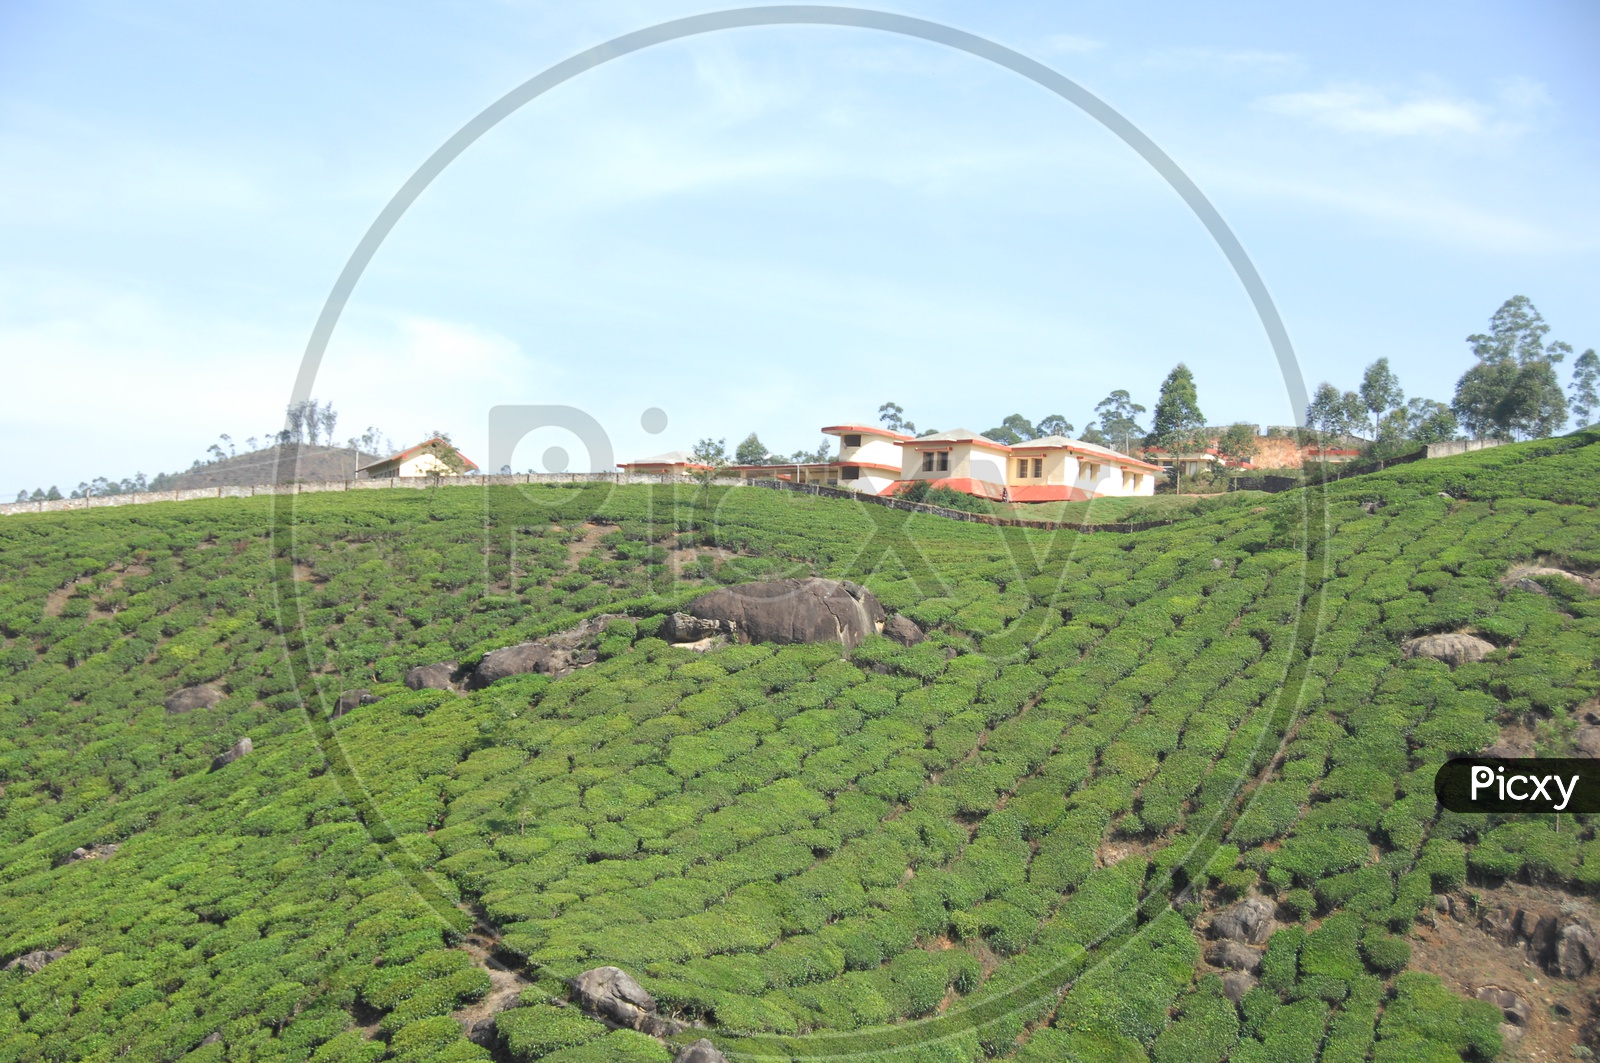 Landscape of tea plants in Kerala